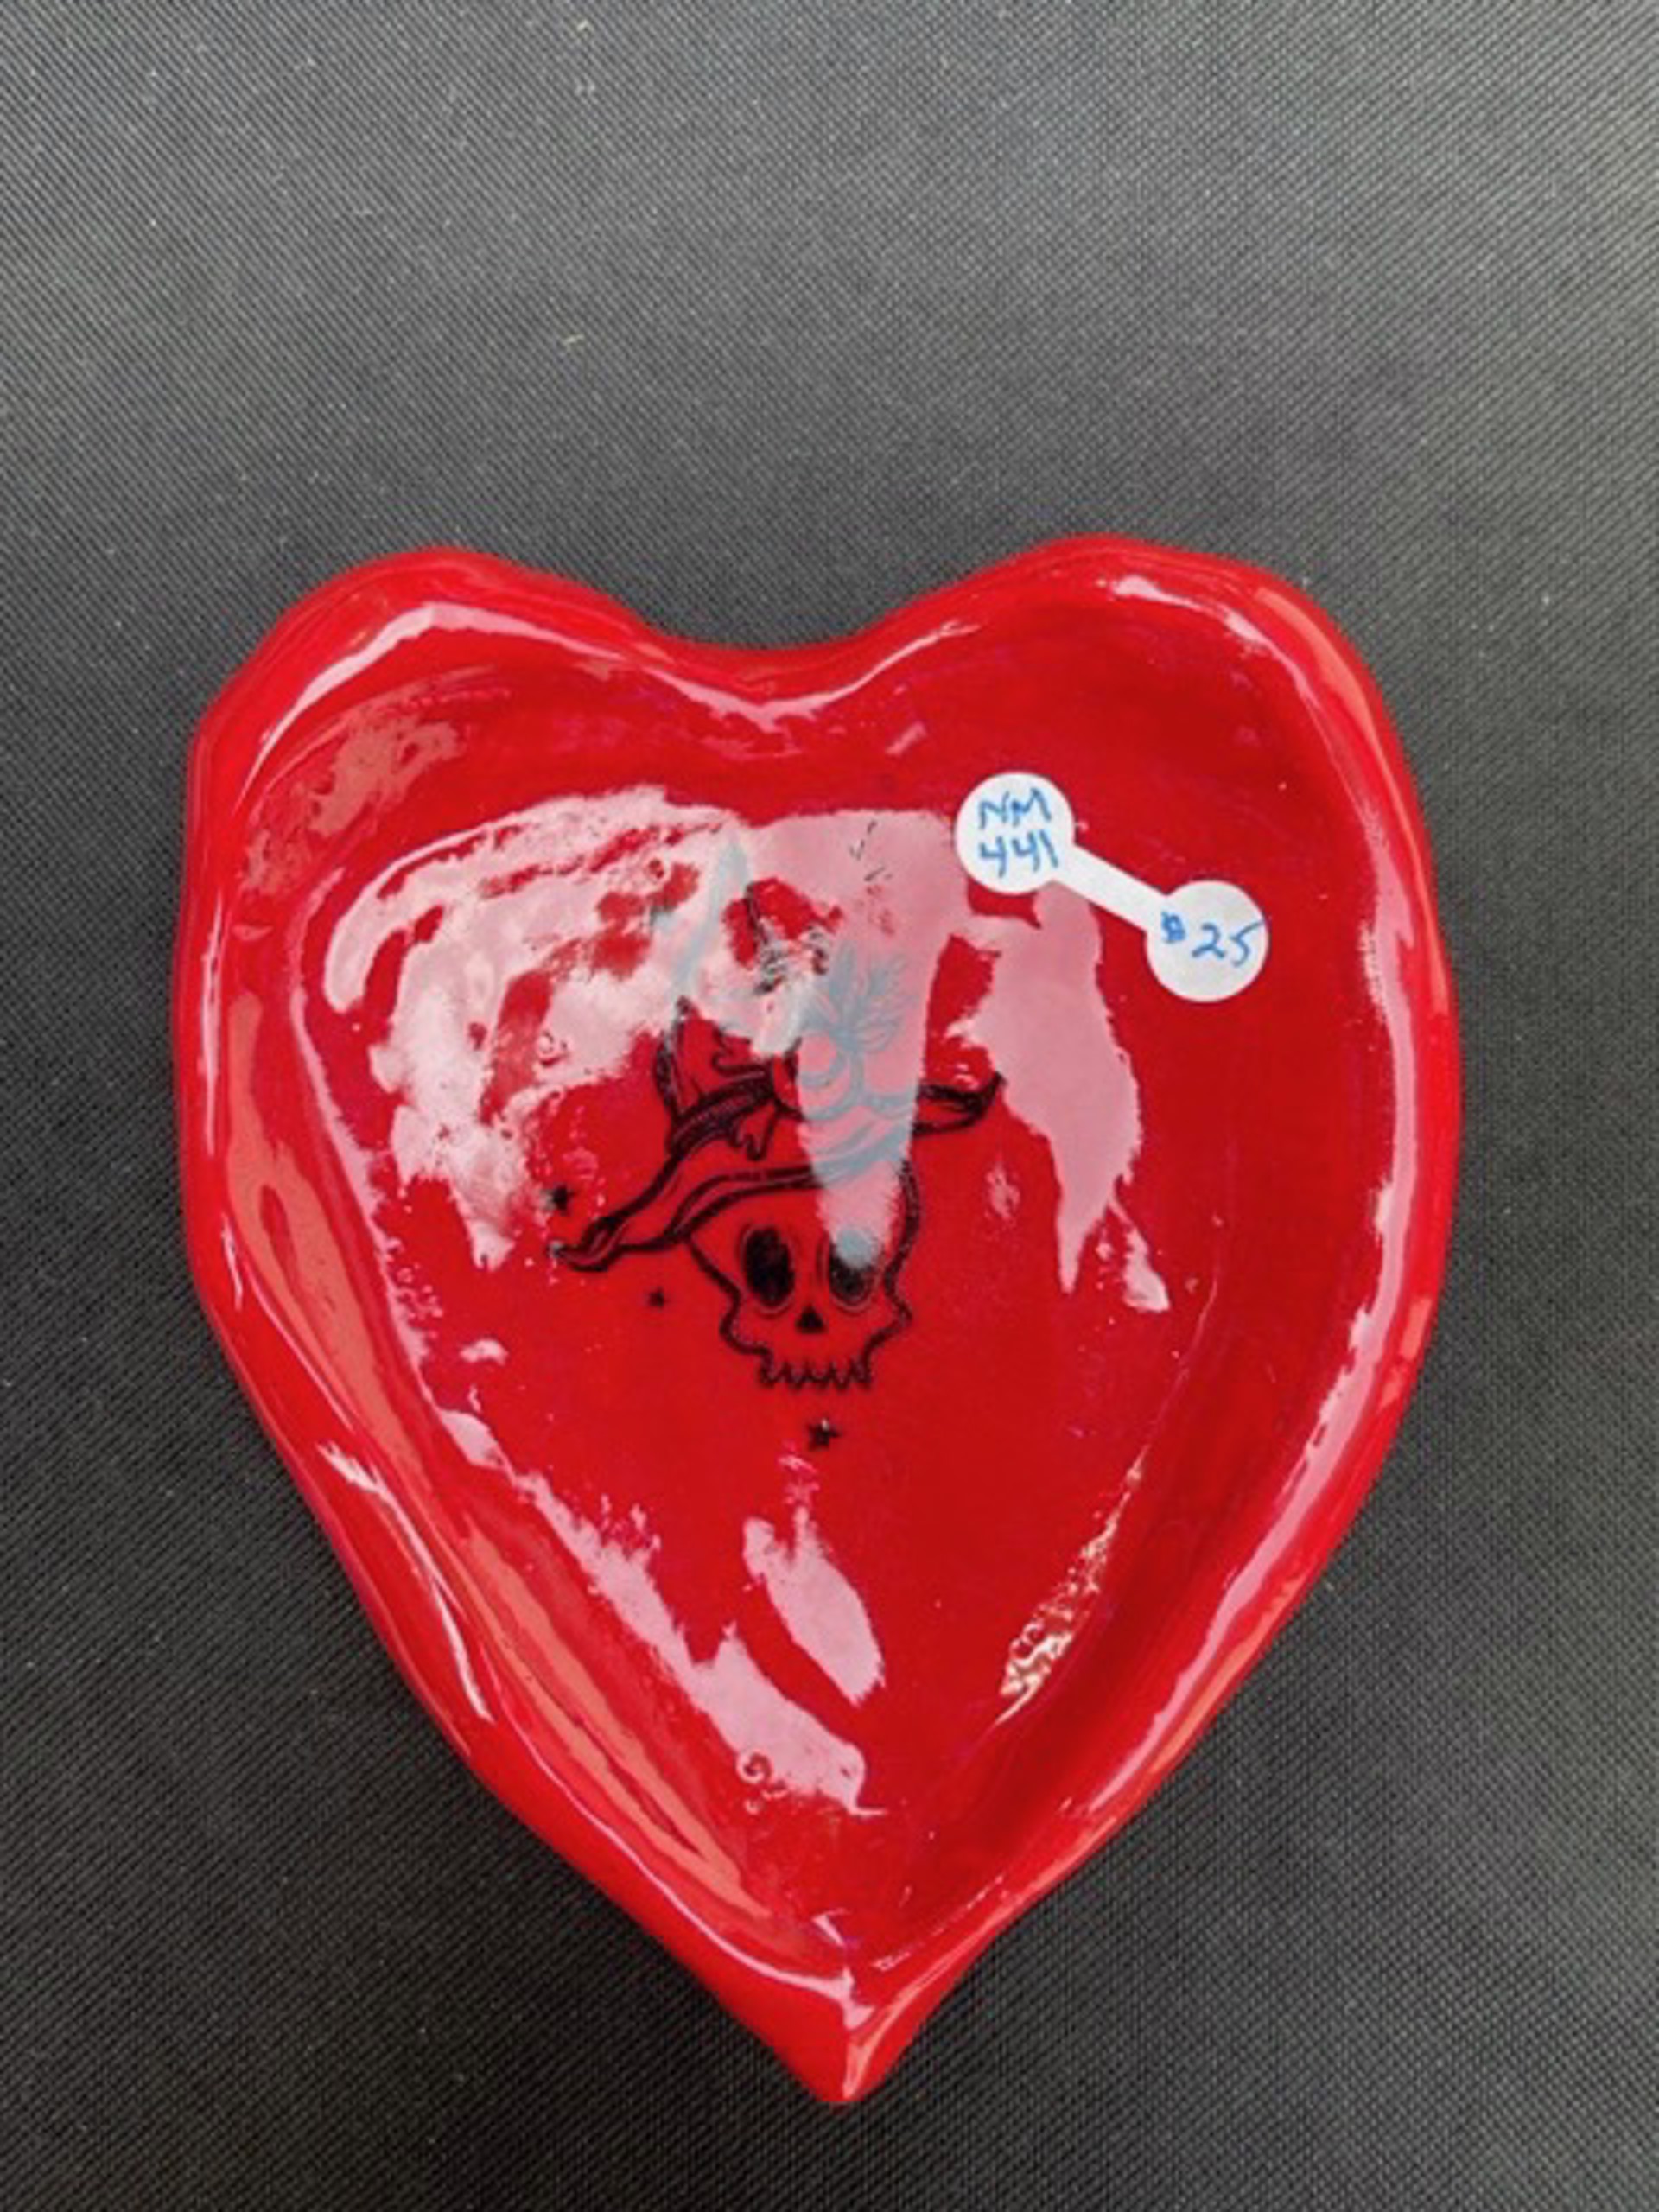 Red Heart Dish by Nicole Merkens